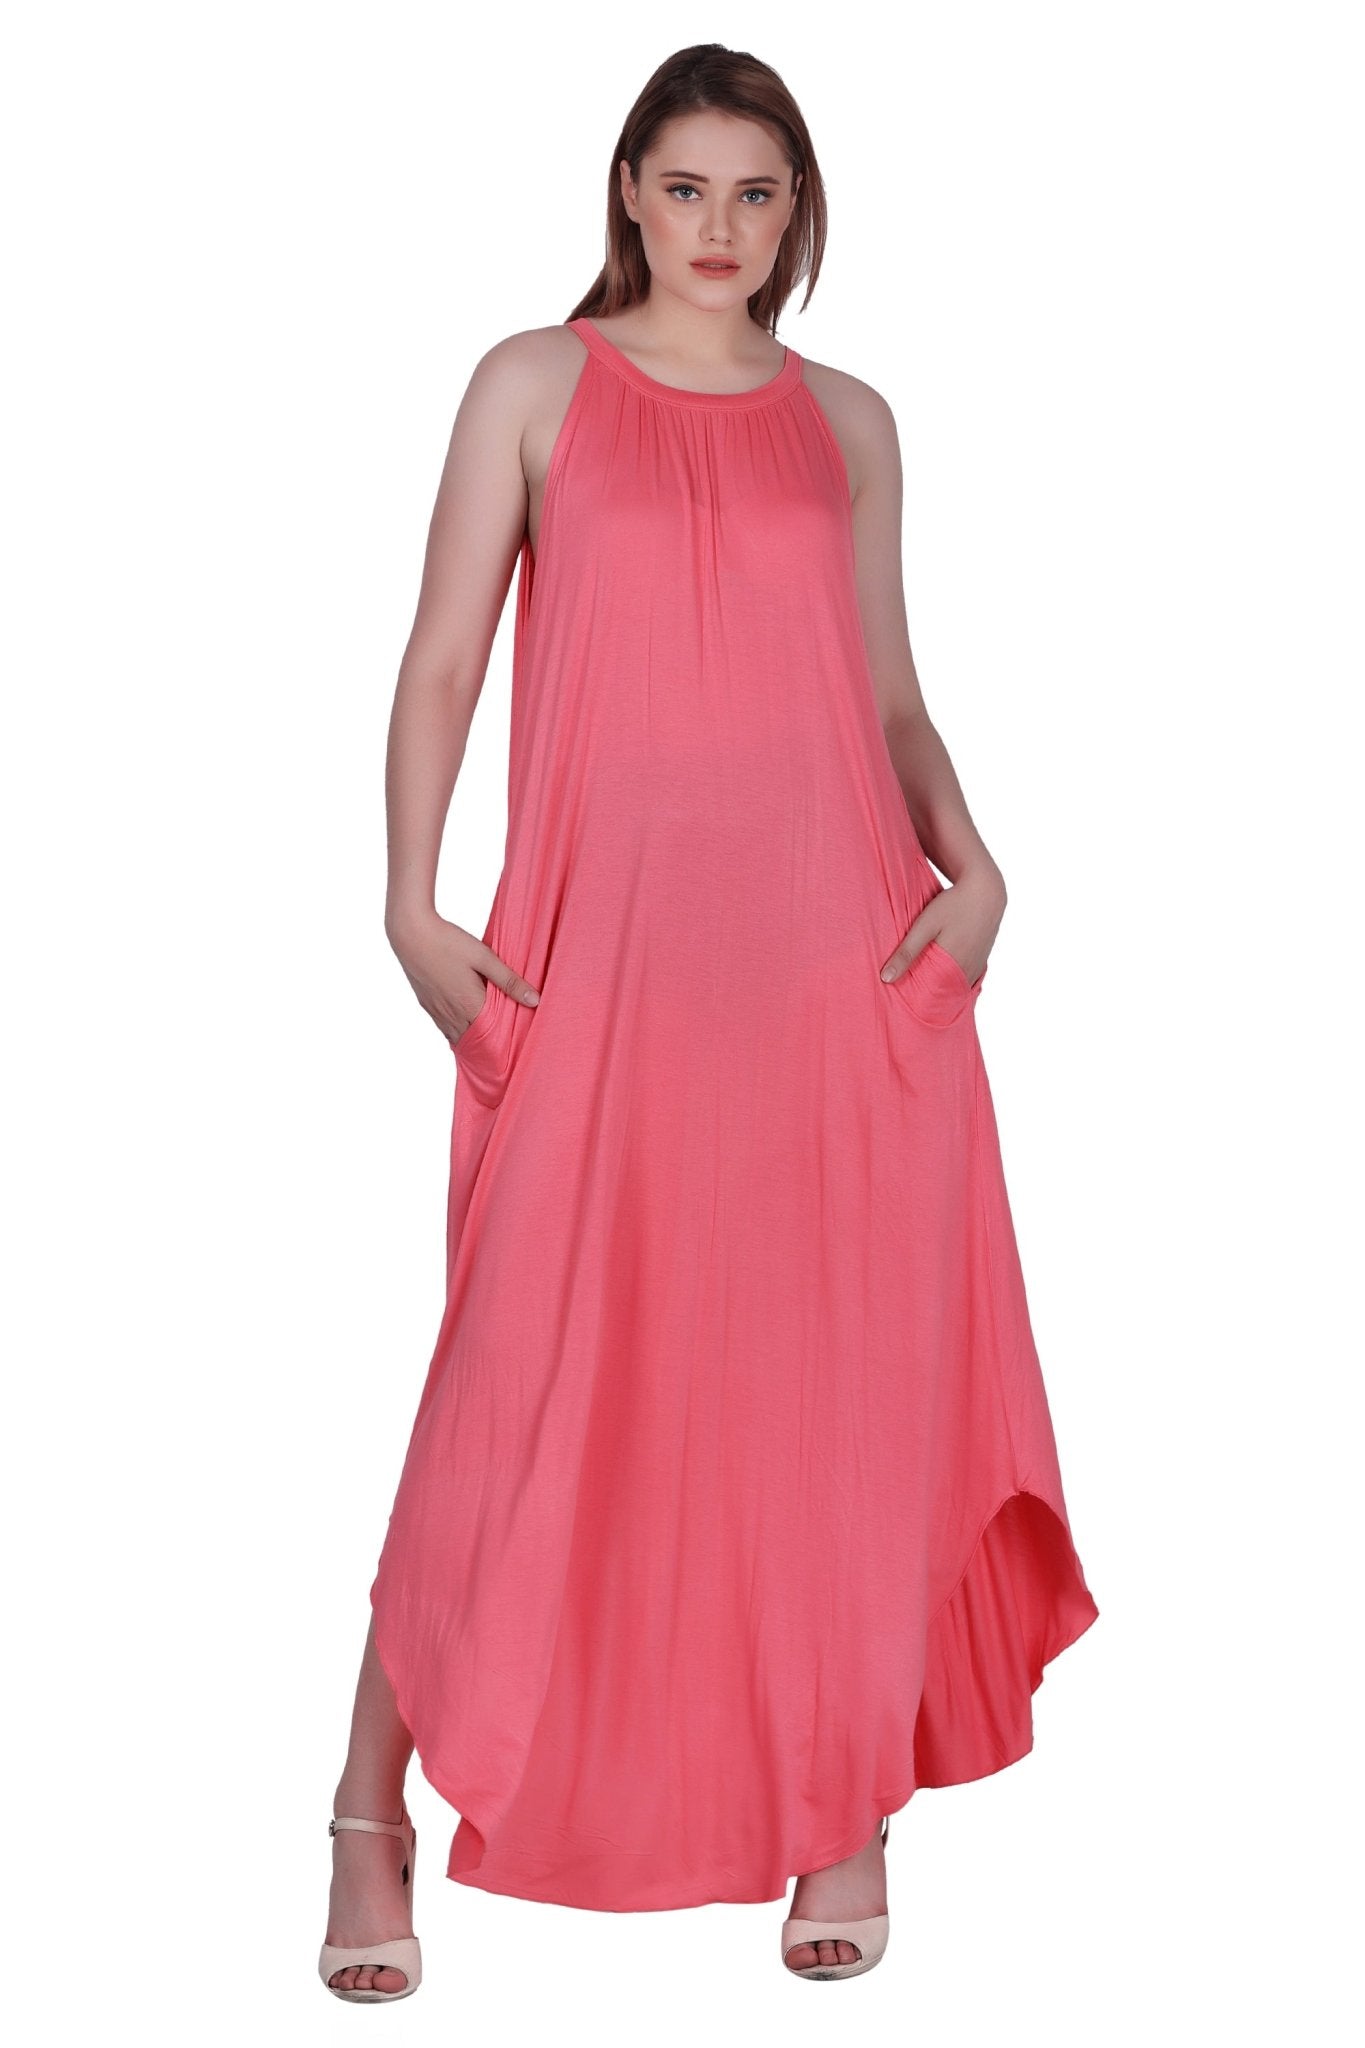 Solid Color Dress 30329 - Advance Apparels Inc